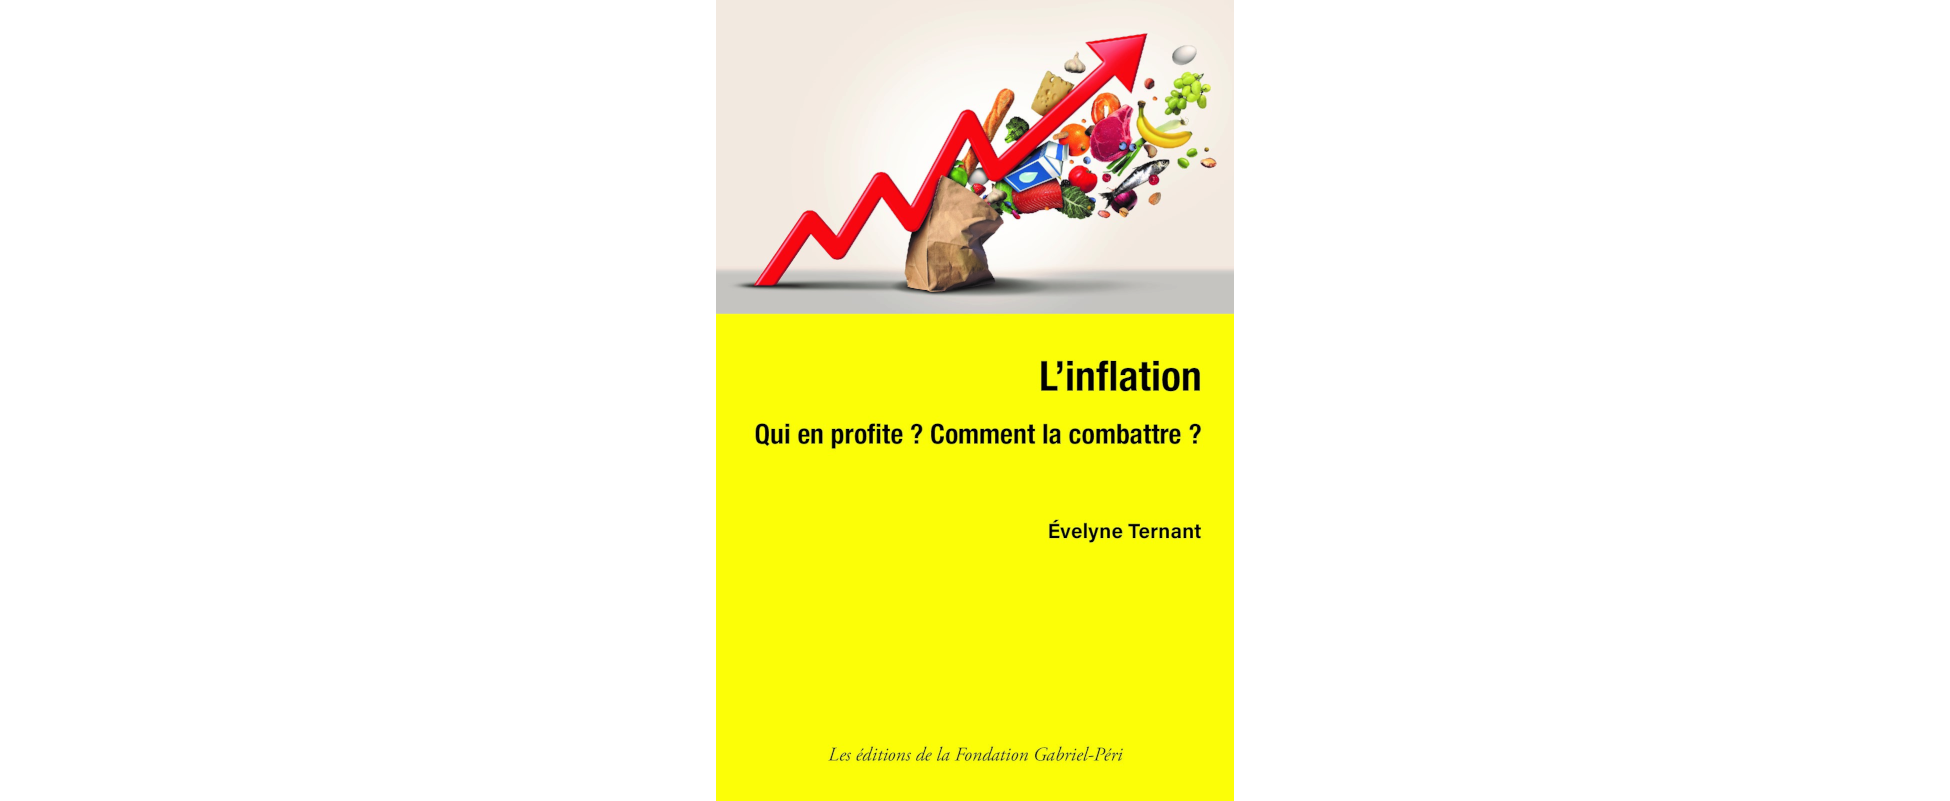 Évelyne Ternant: «Nous sommes face à une inflation du capital», Entretien publié dans l’Humanité